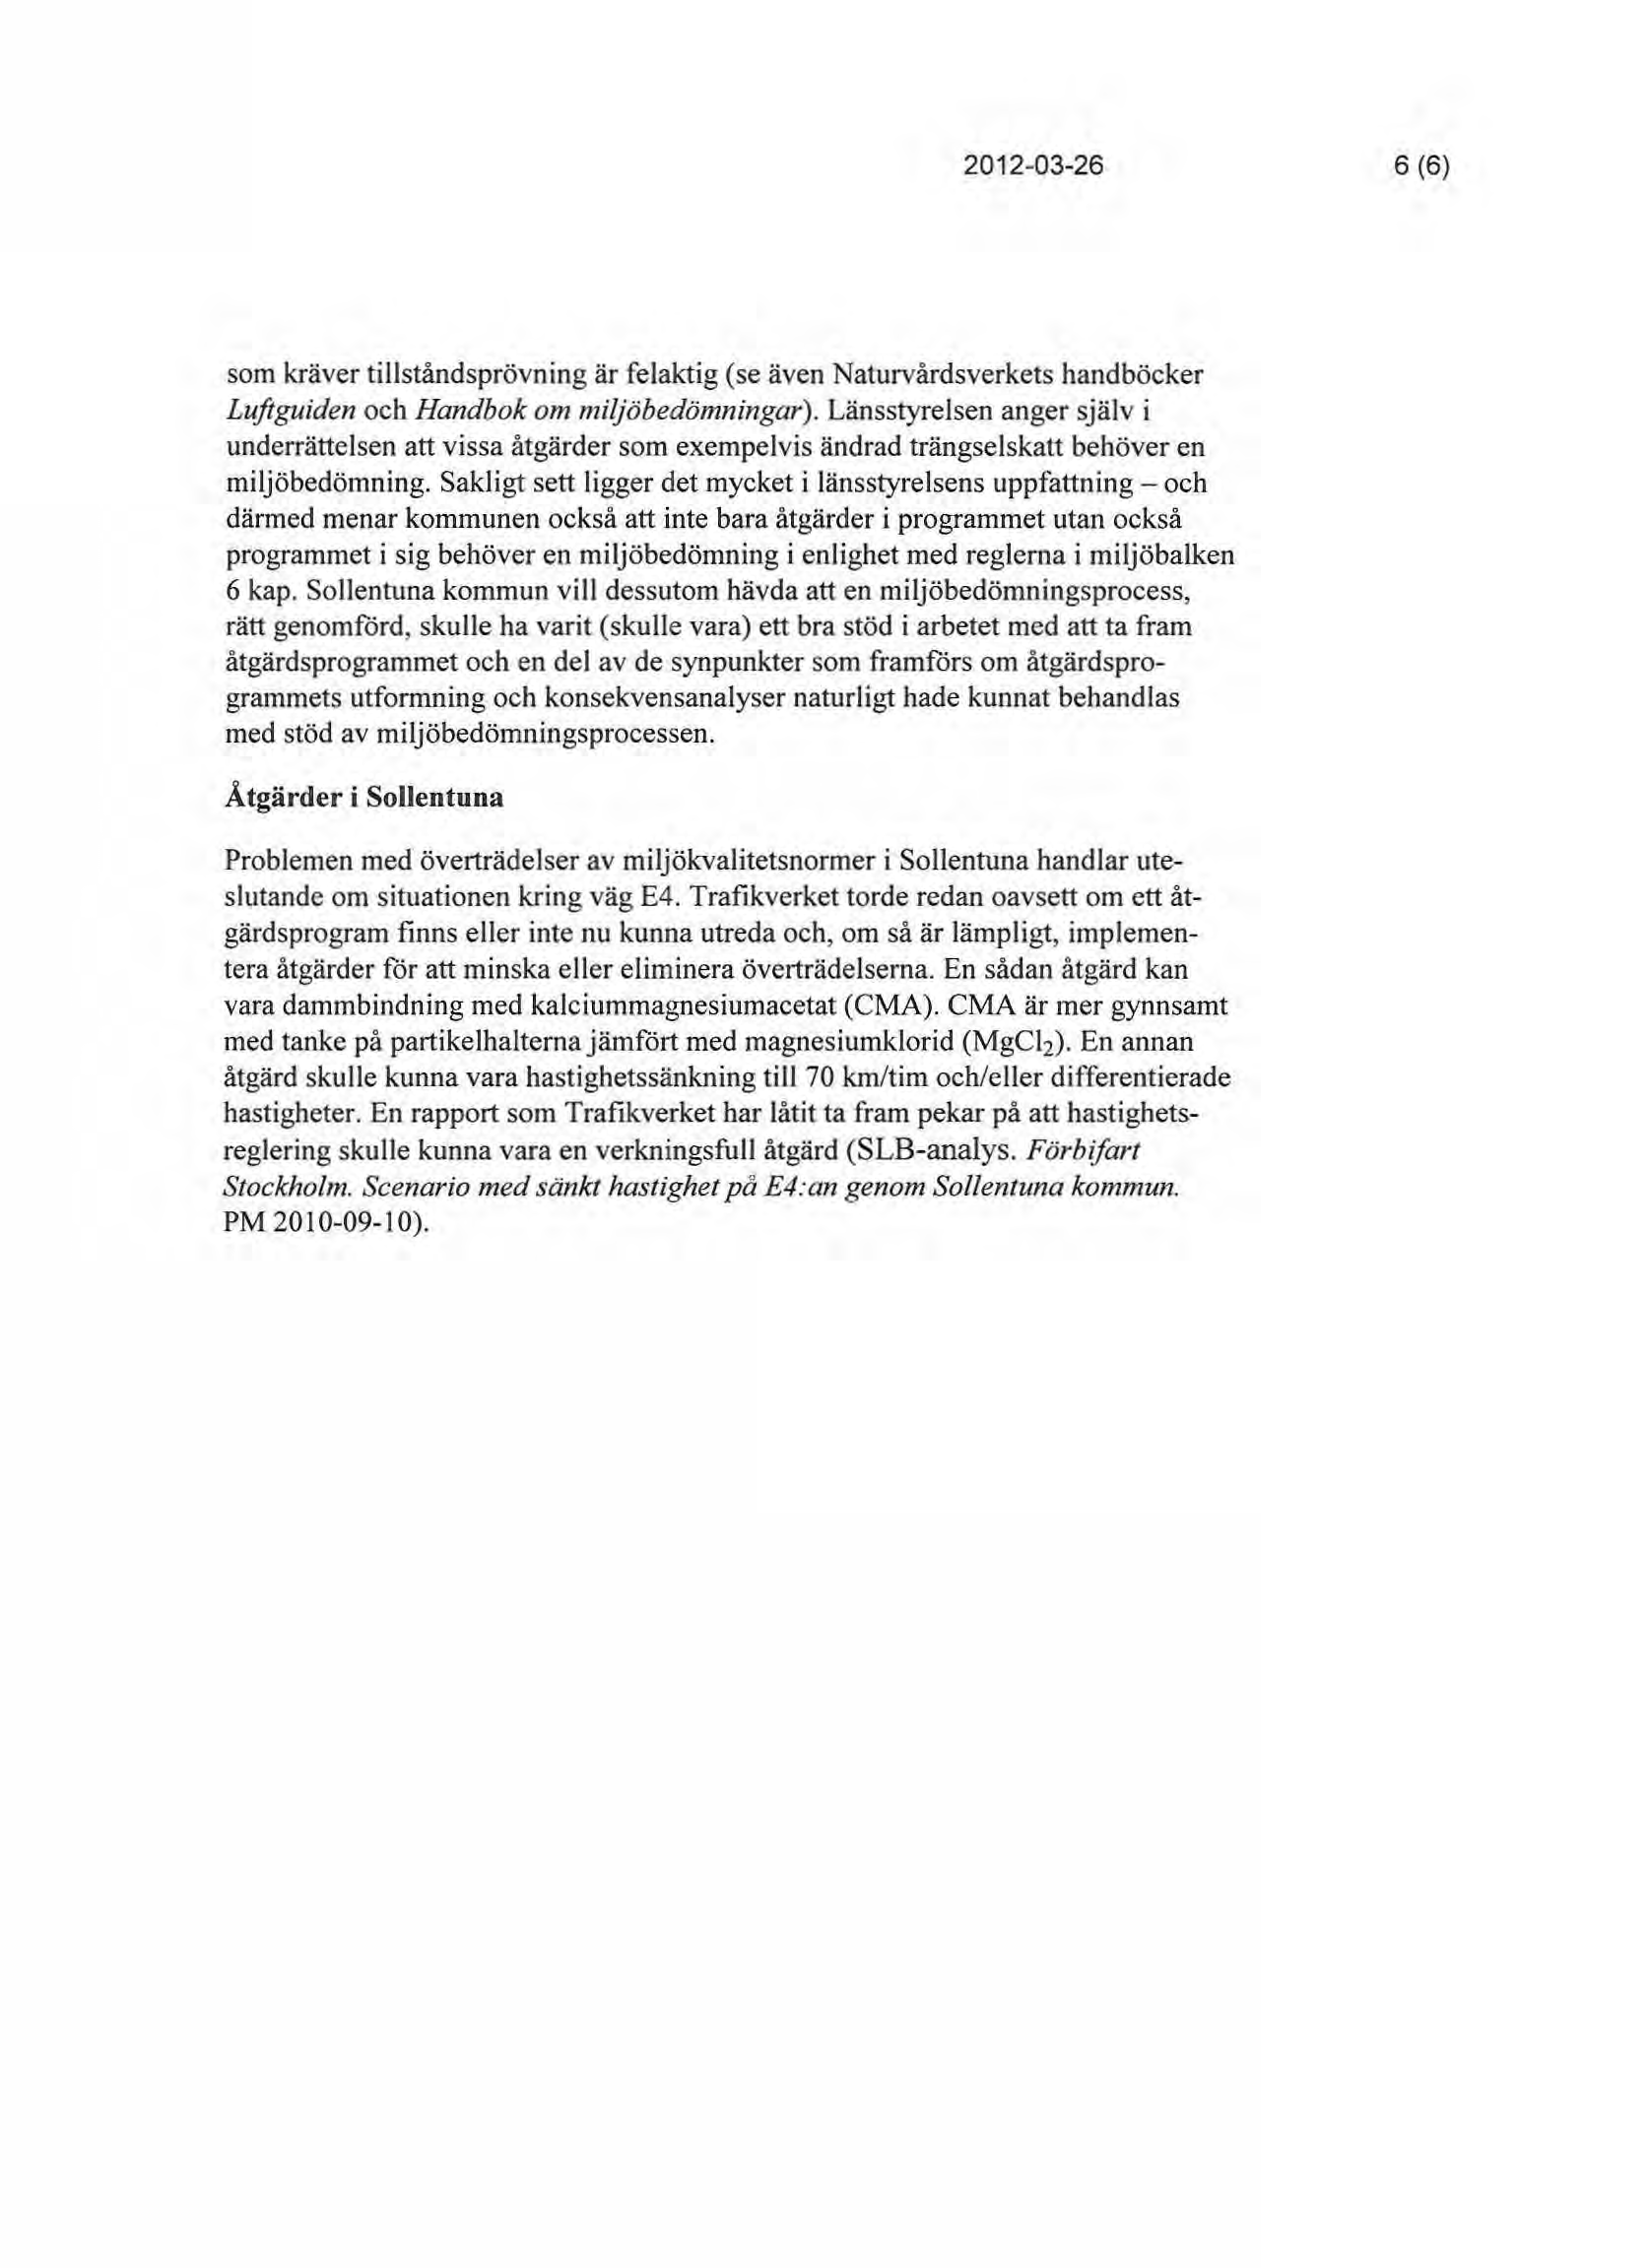 2012-03-26 6(6) som kräver tillståndsprövning är felaktig (se även Naturvårdsverkets handböcker Luftguiden och Handbok om miljöbedömningar).